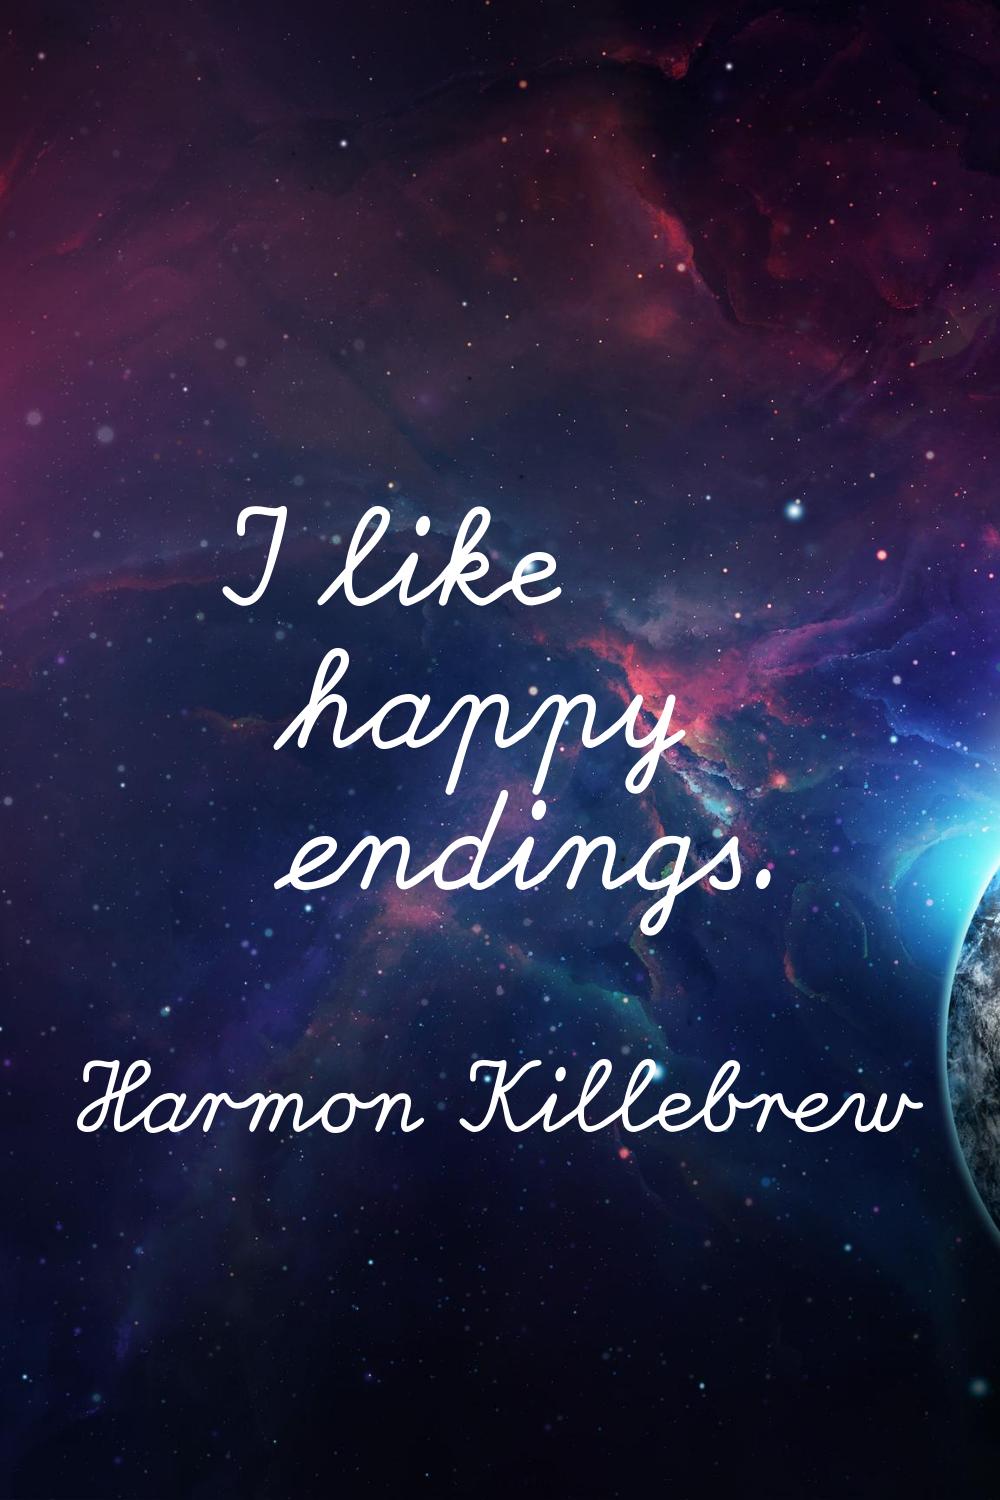 I like happy endings.